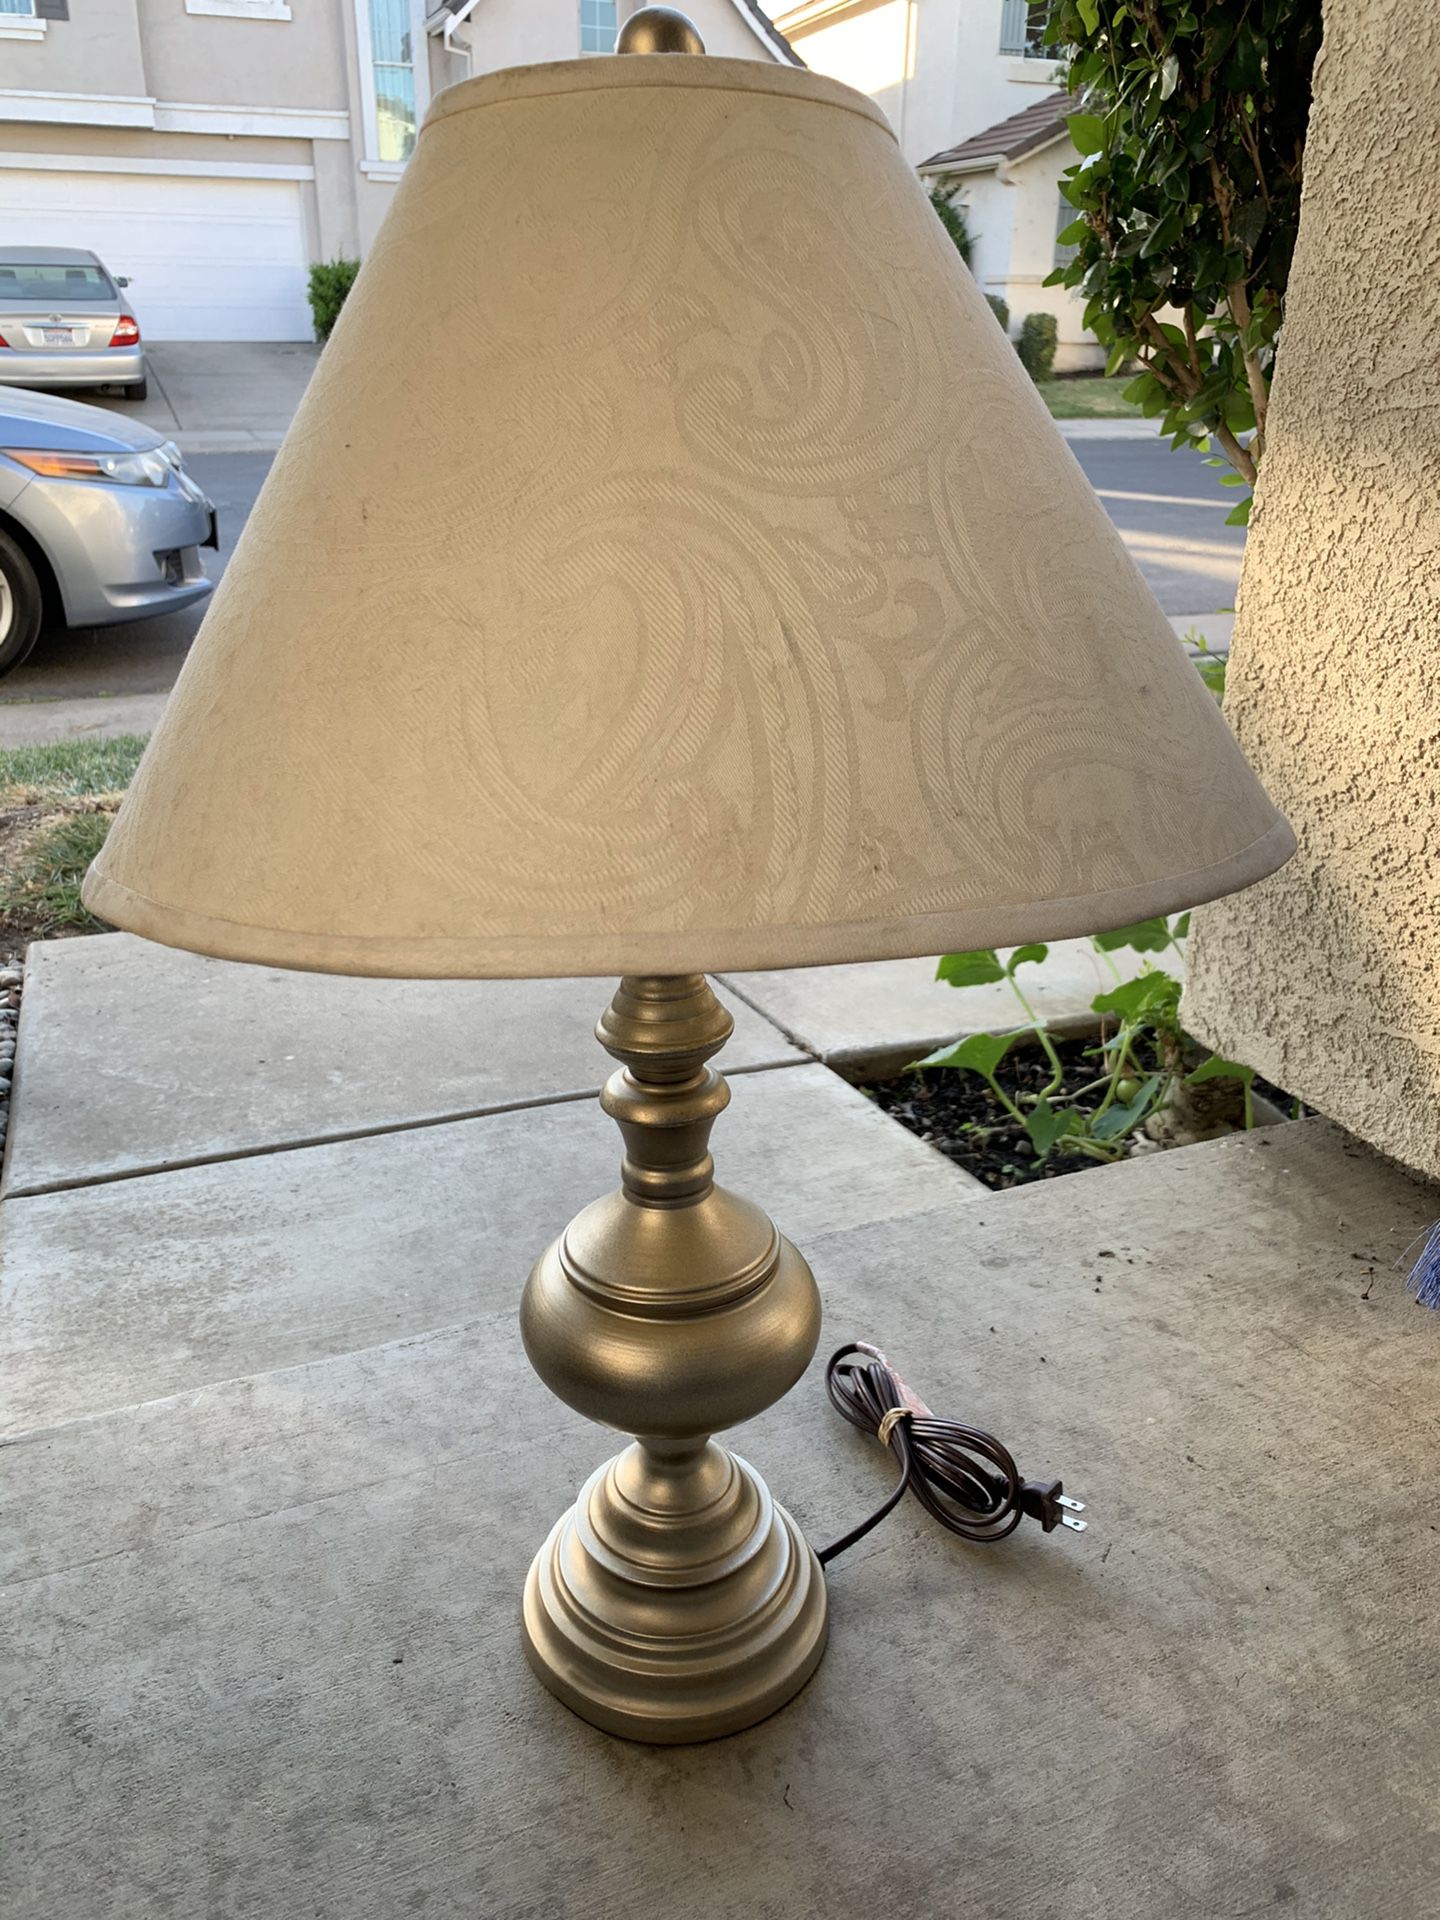 NICE TABLE LAMP w/ SHADE & LIGHT BULB